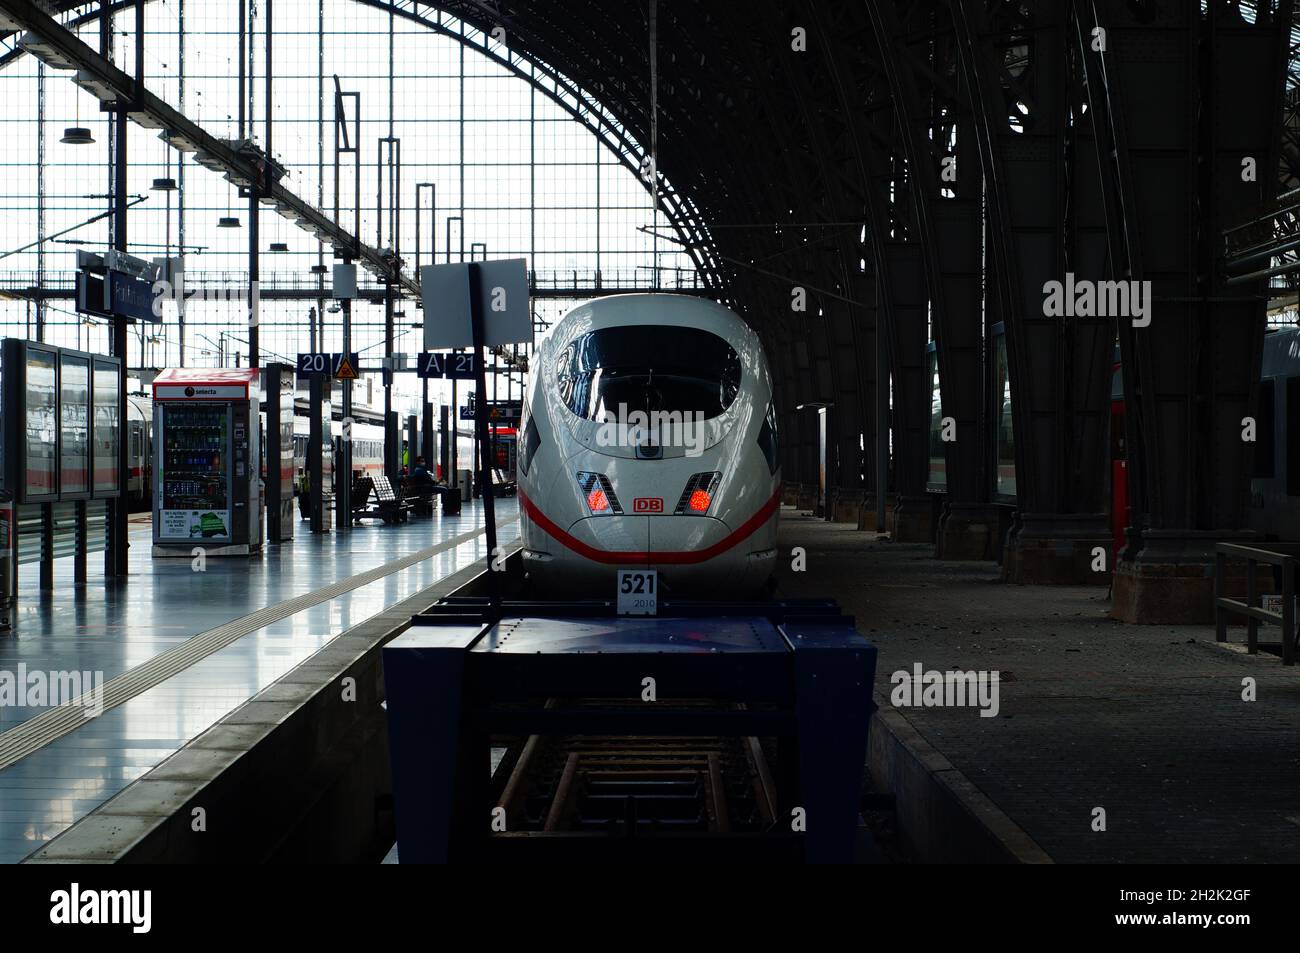 FRANKFURT, DEUTSCHLAND - 11. Jul 2021: Silhouette eines ICE-Hochgeschwindigkeitszuges am Frankfurter Hauptbahnhof. Gegenlichtaufnahme eines ICE 3 auf der Plattform Stockfoto